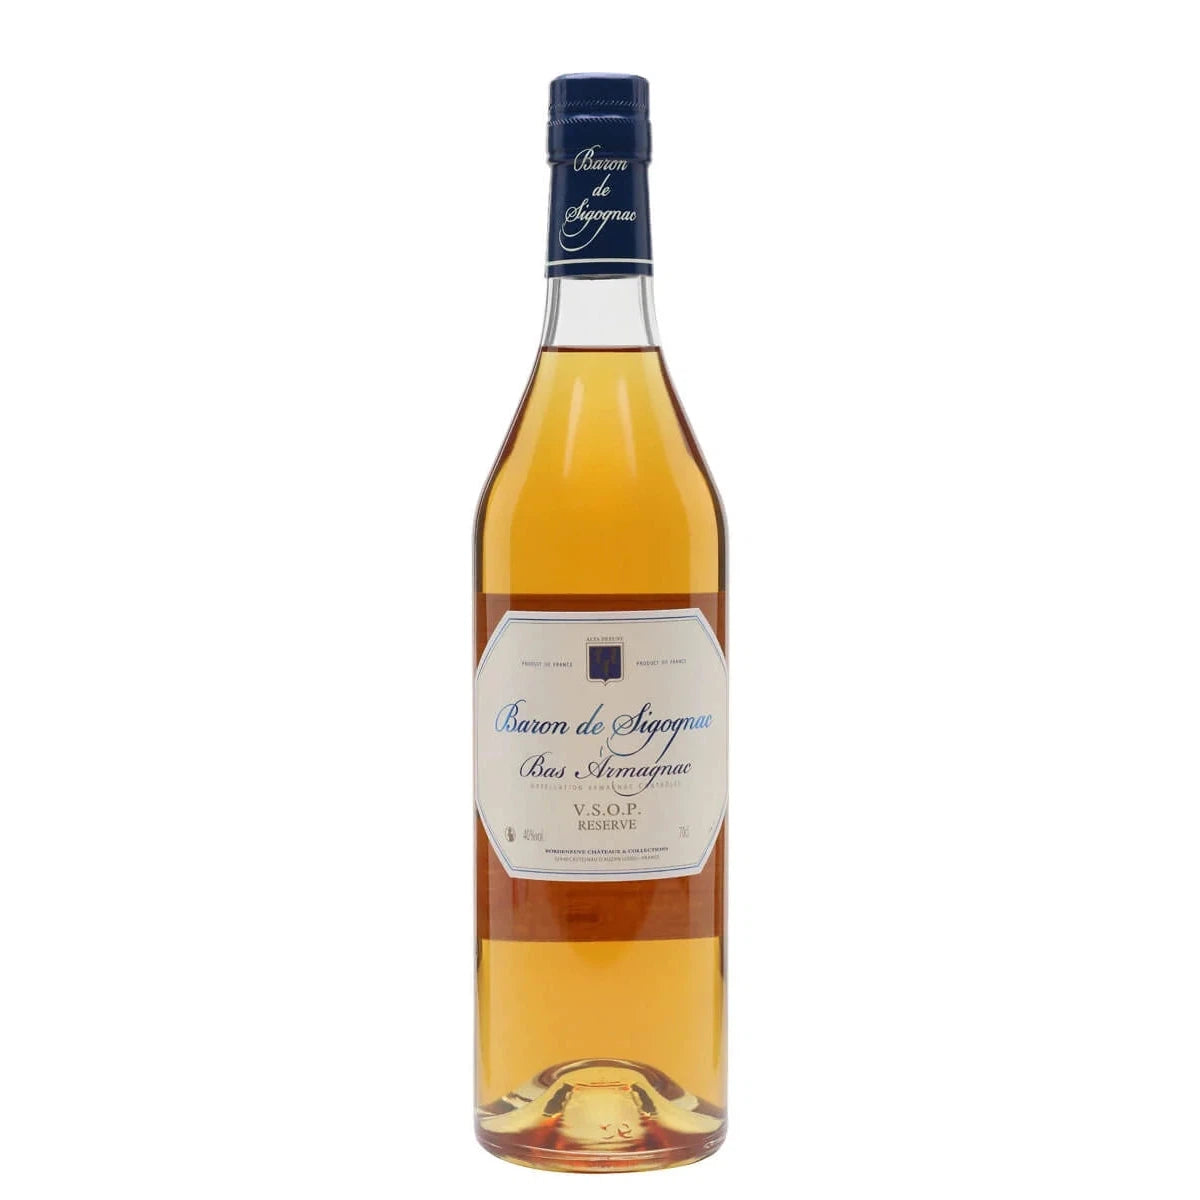 Baron de Sigognac VSOP Armagnac-Brandy / Cognac / Armagnac-3586881131127-Fountainhall Wines